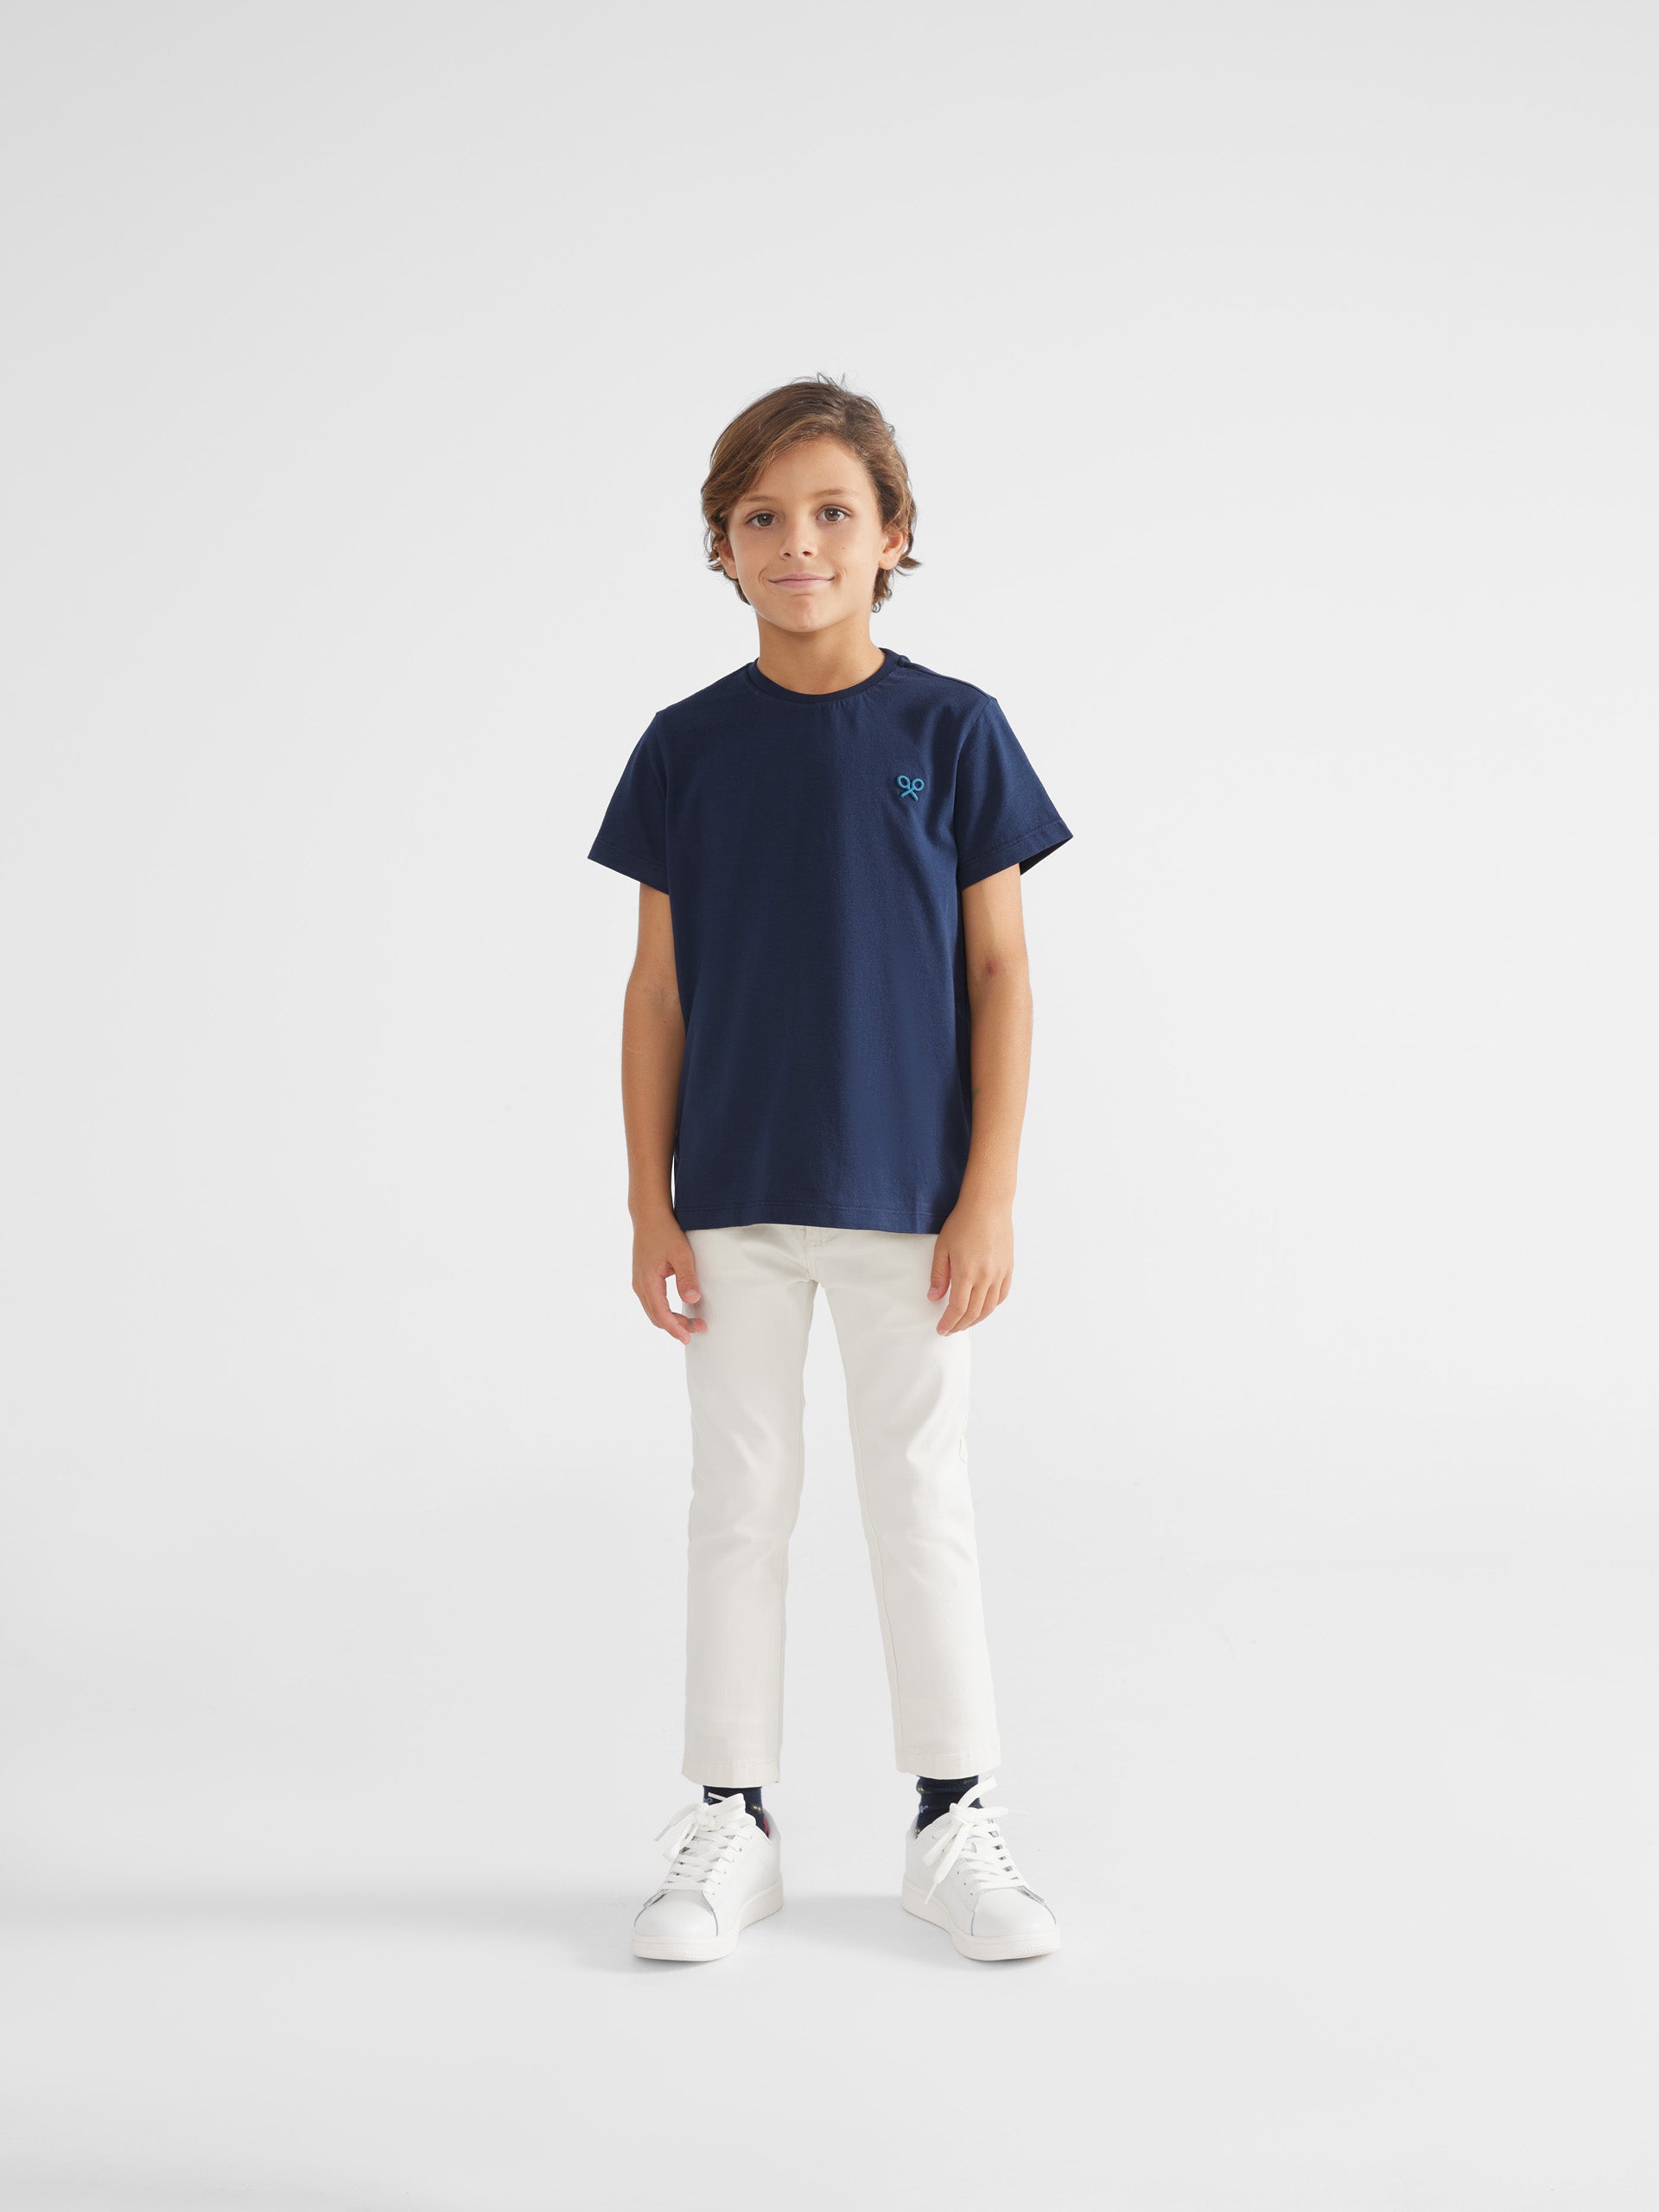 Camiseta kids winter vibes azul marino